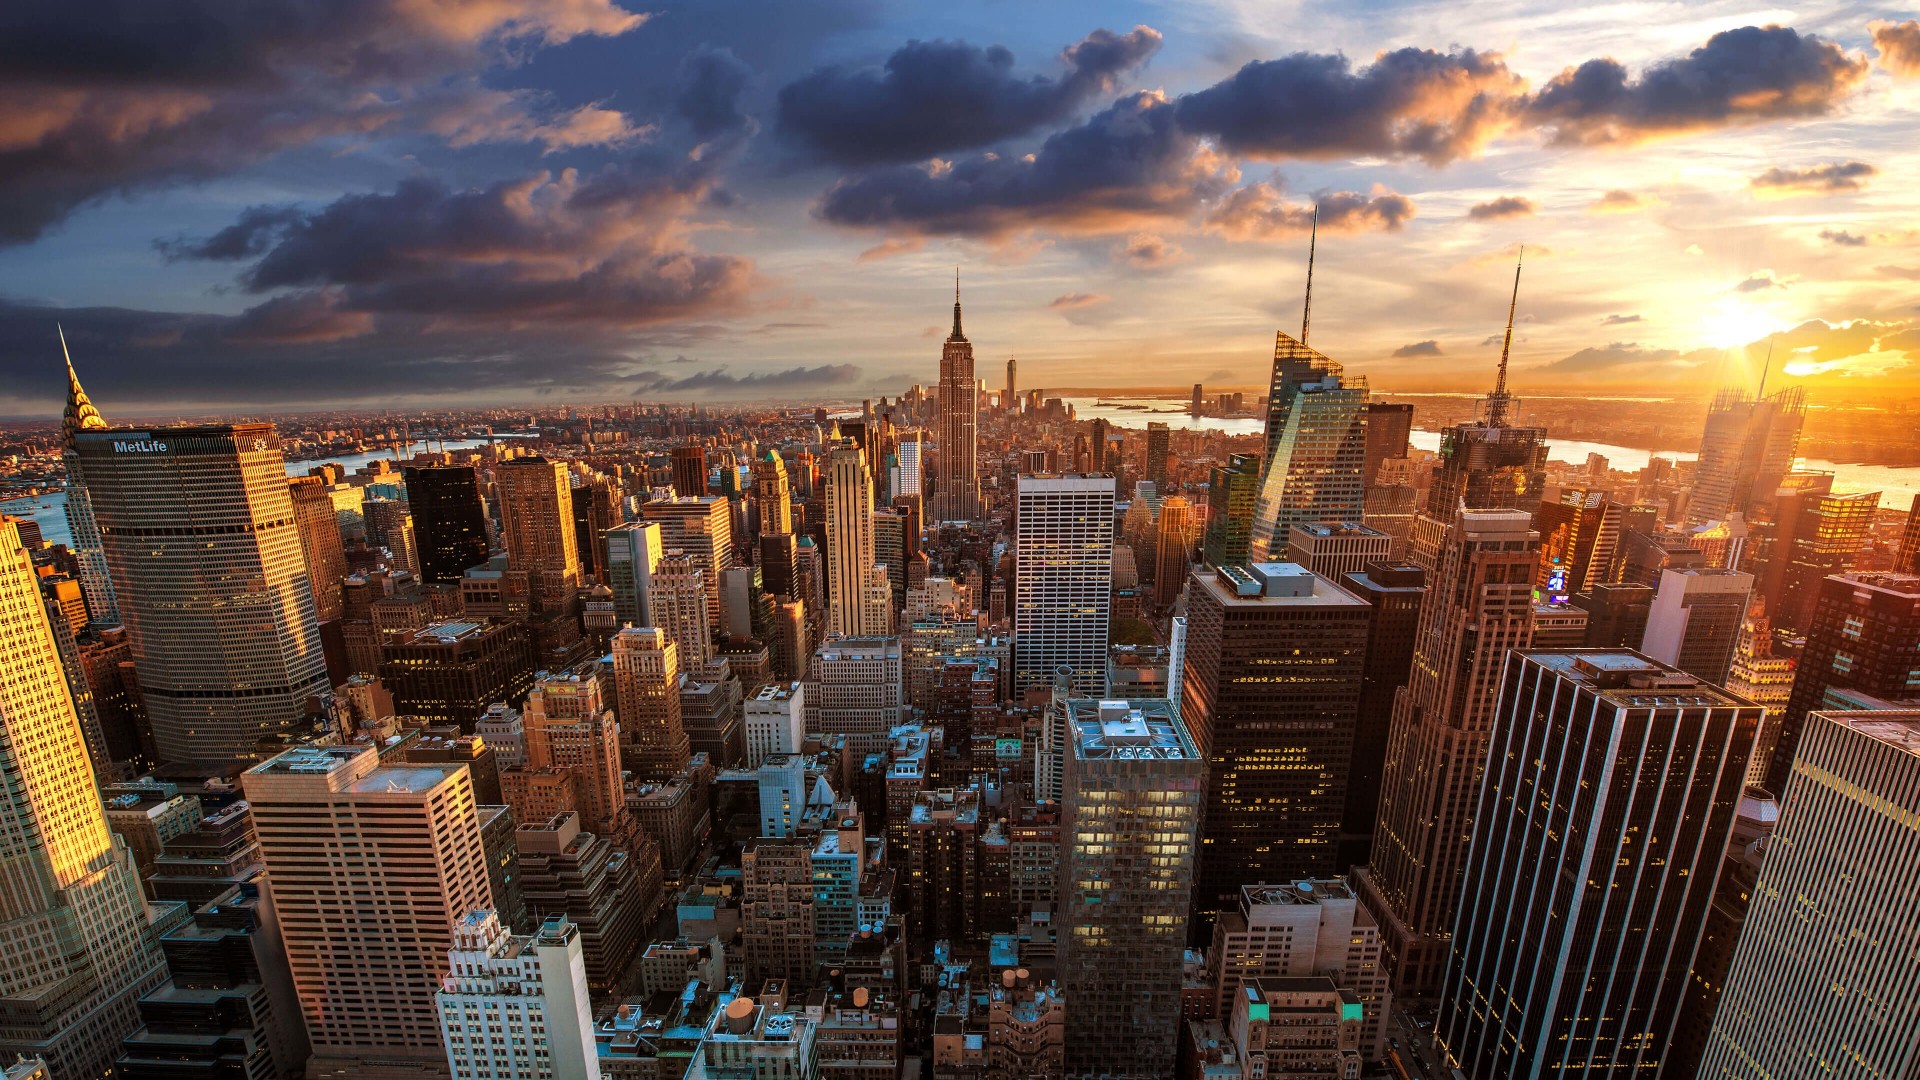 New York City Skyline At Sunset Wallpaper for Desktop 1920x1080